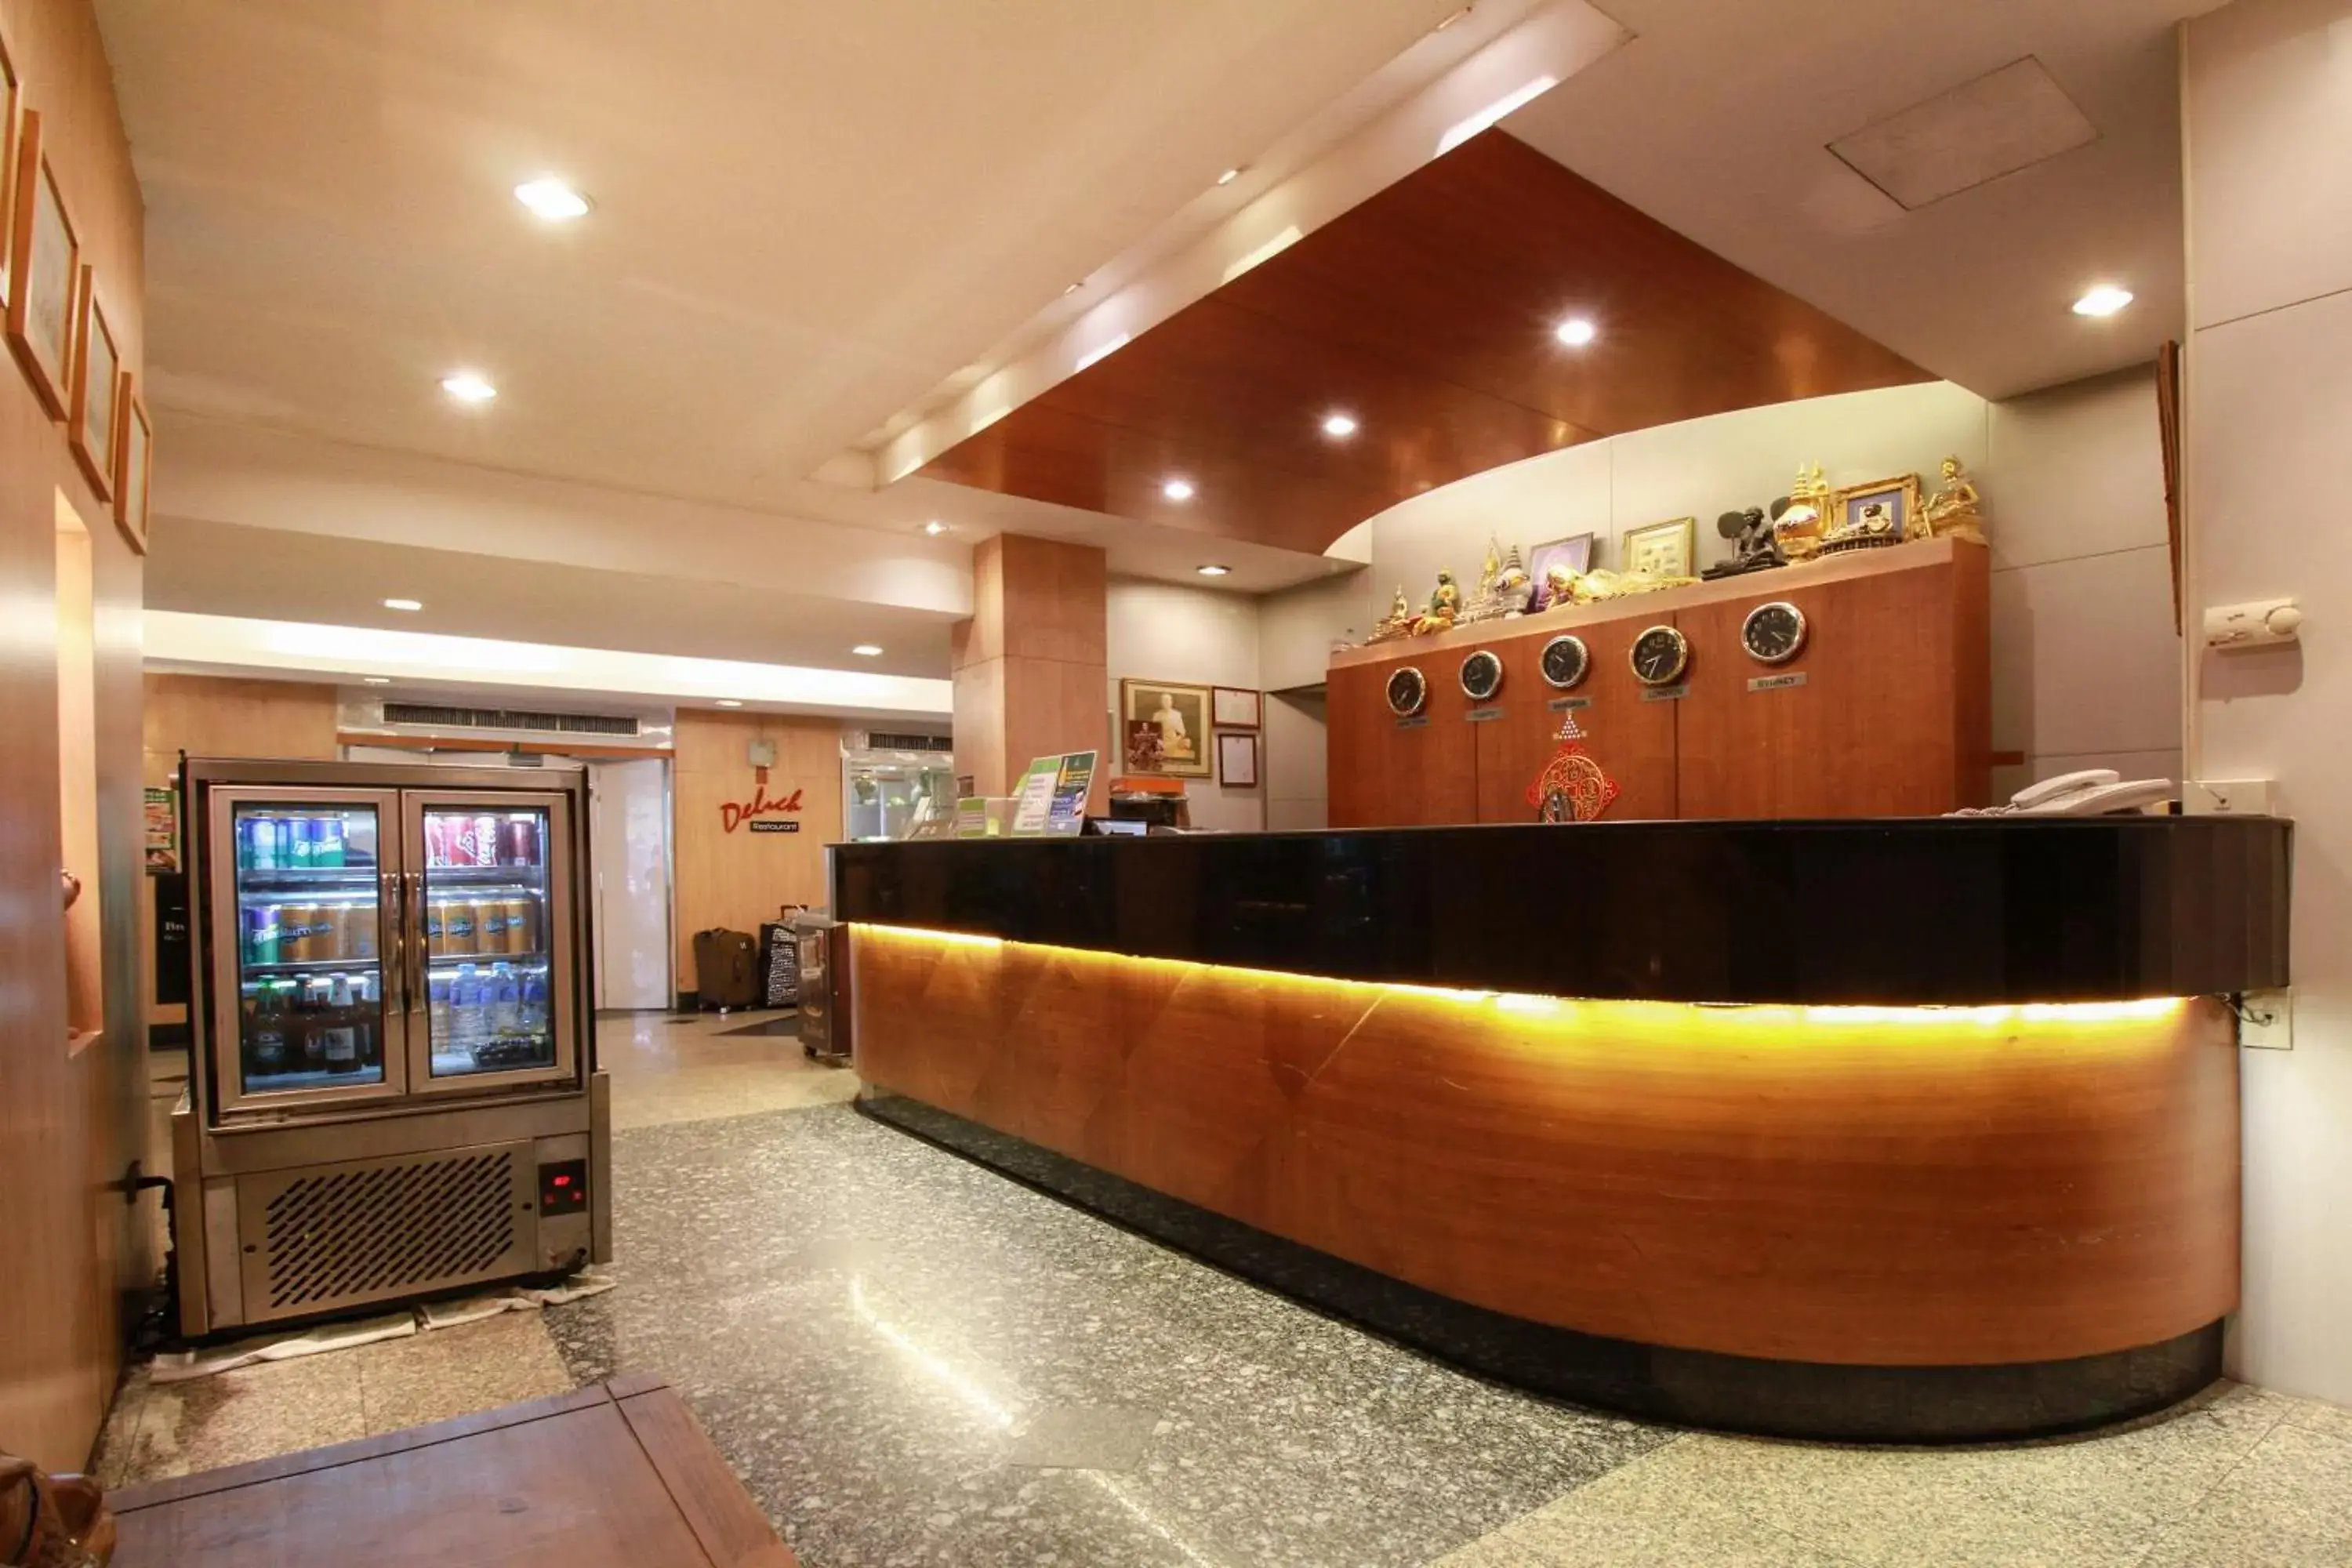 Lobby or reception, Lobby/Reception in Ten Stars Hotel Pratunam